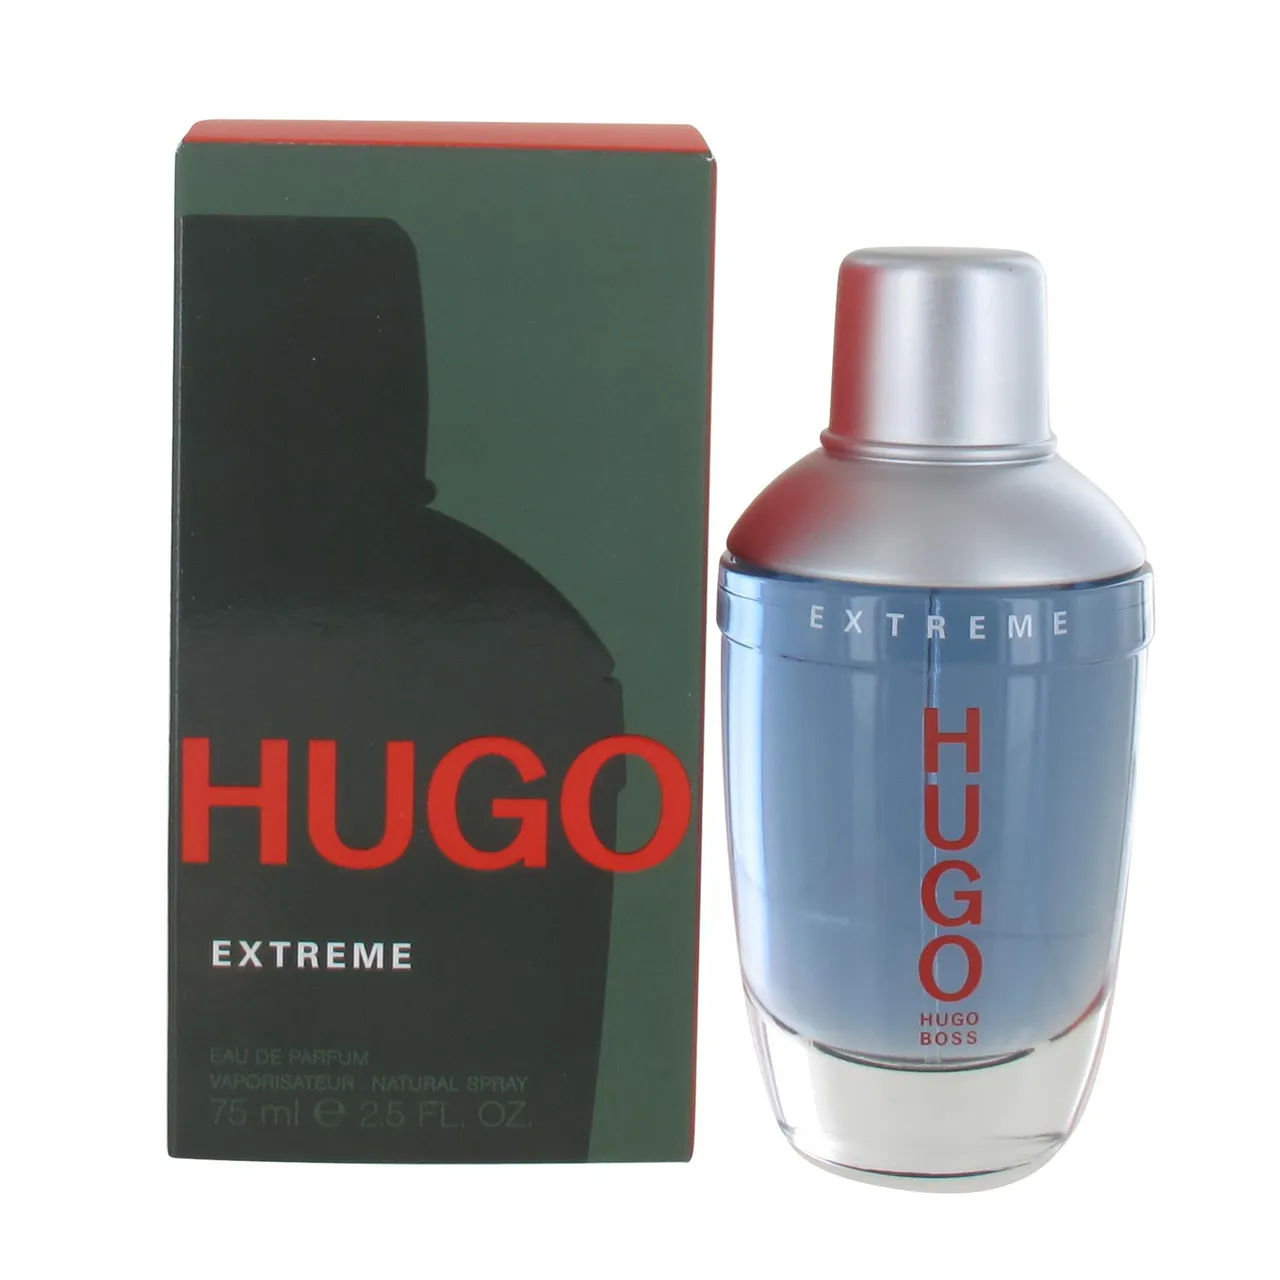 Hugo Boss Hugo Extreme by Hugo Boss 75ml Eau de Parfum Spray for Him